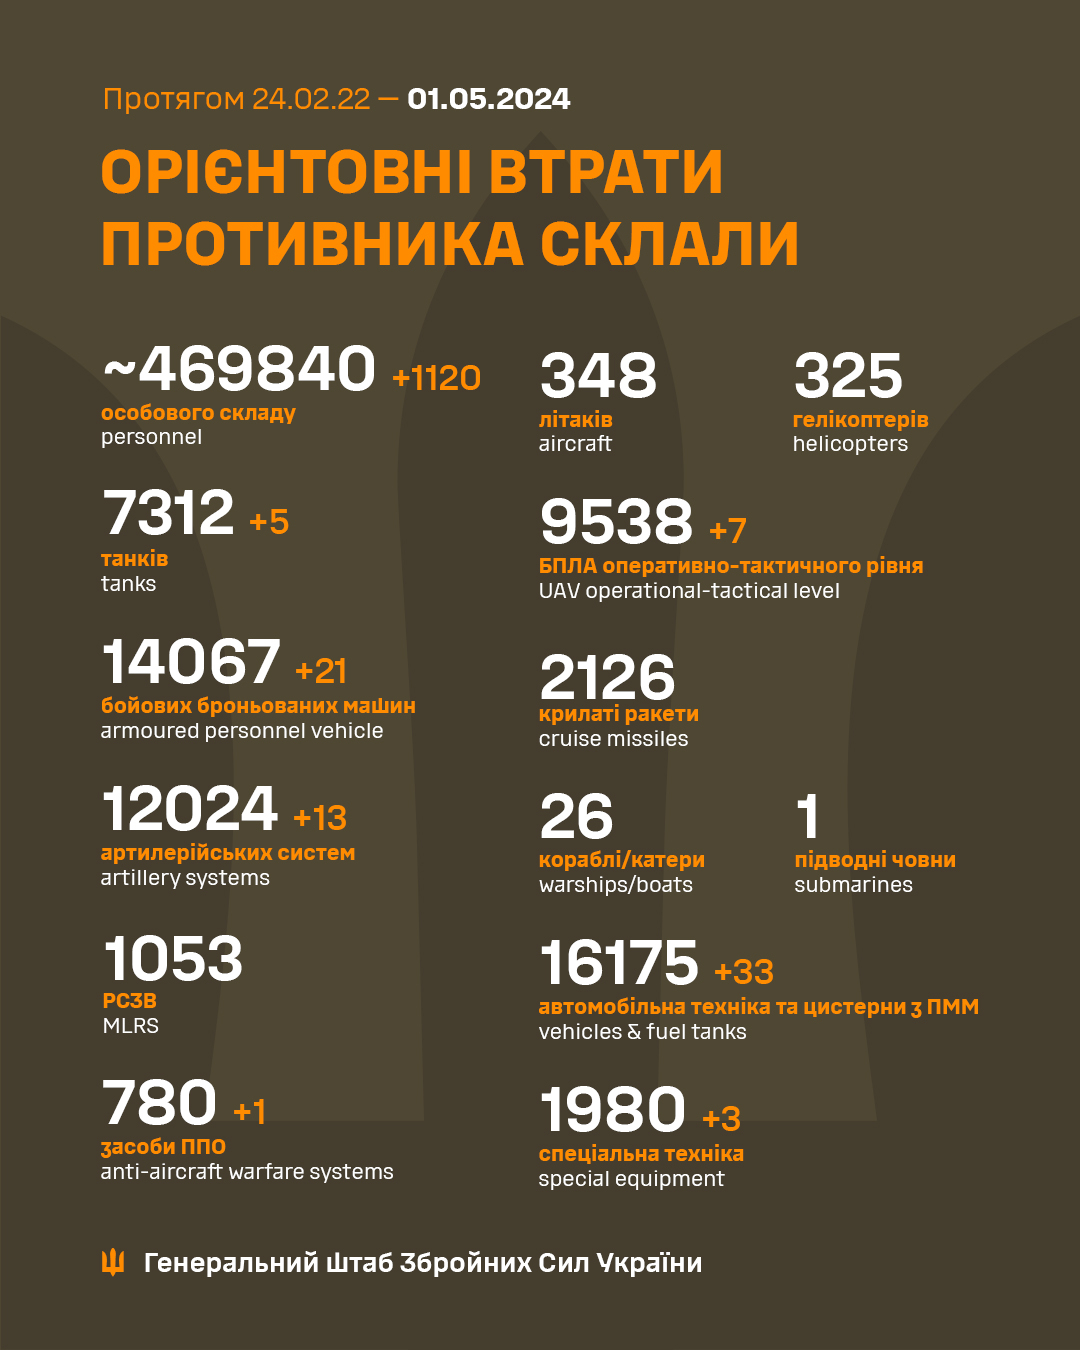 1120 осіб, 21 ББМ і 5 танків: оновлені втрати русні